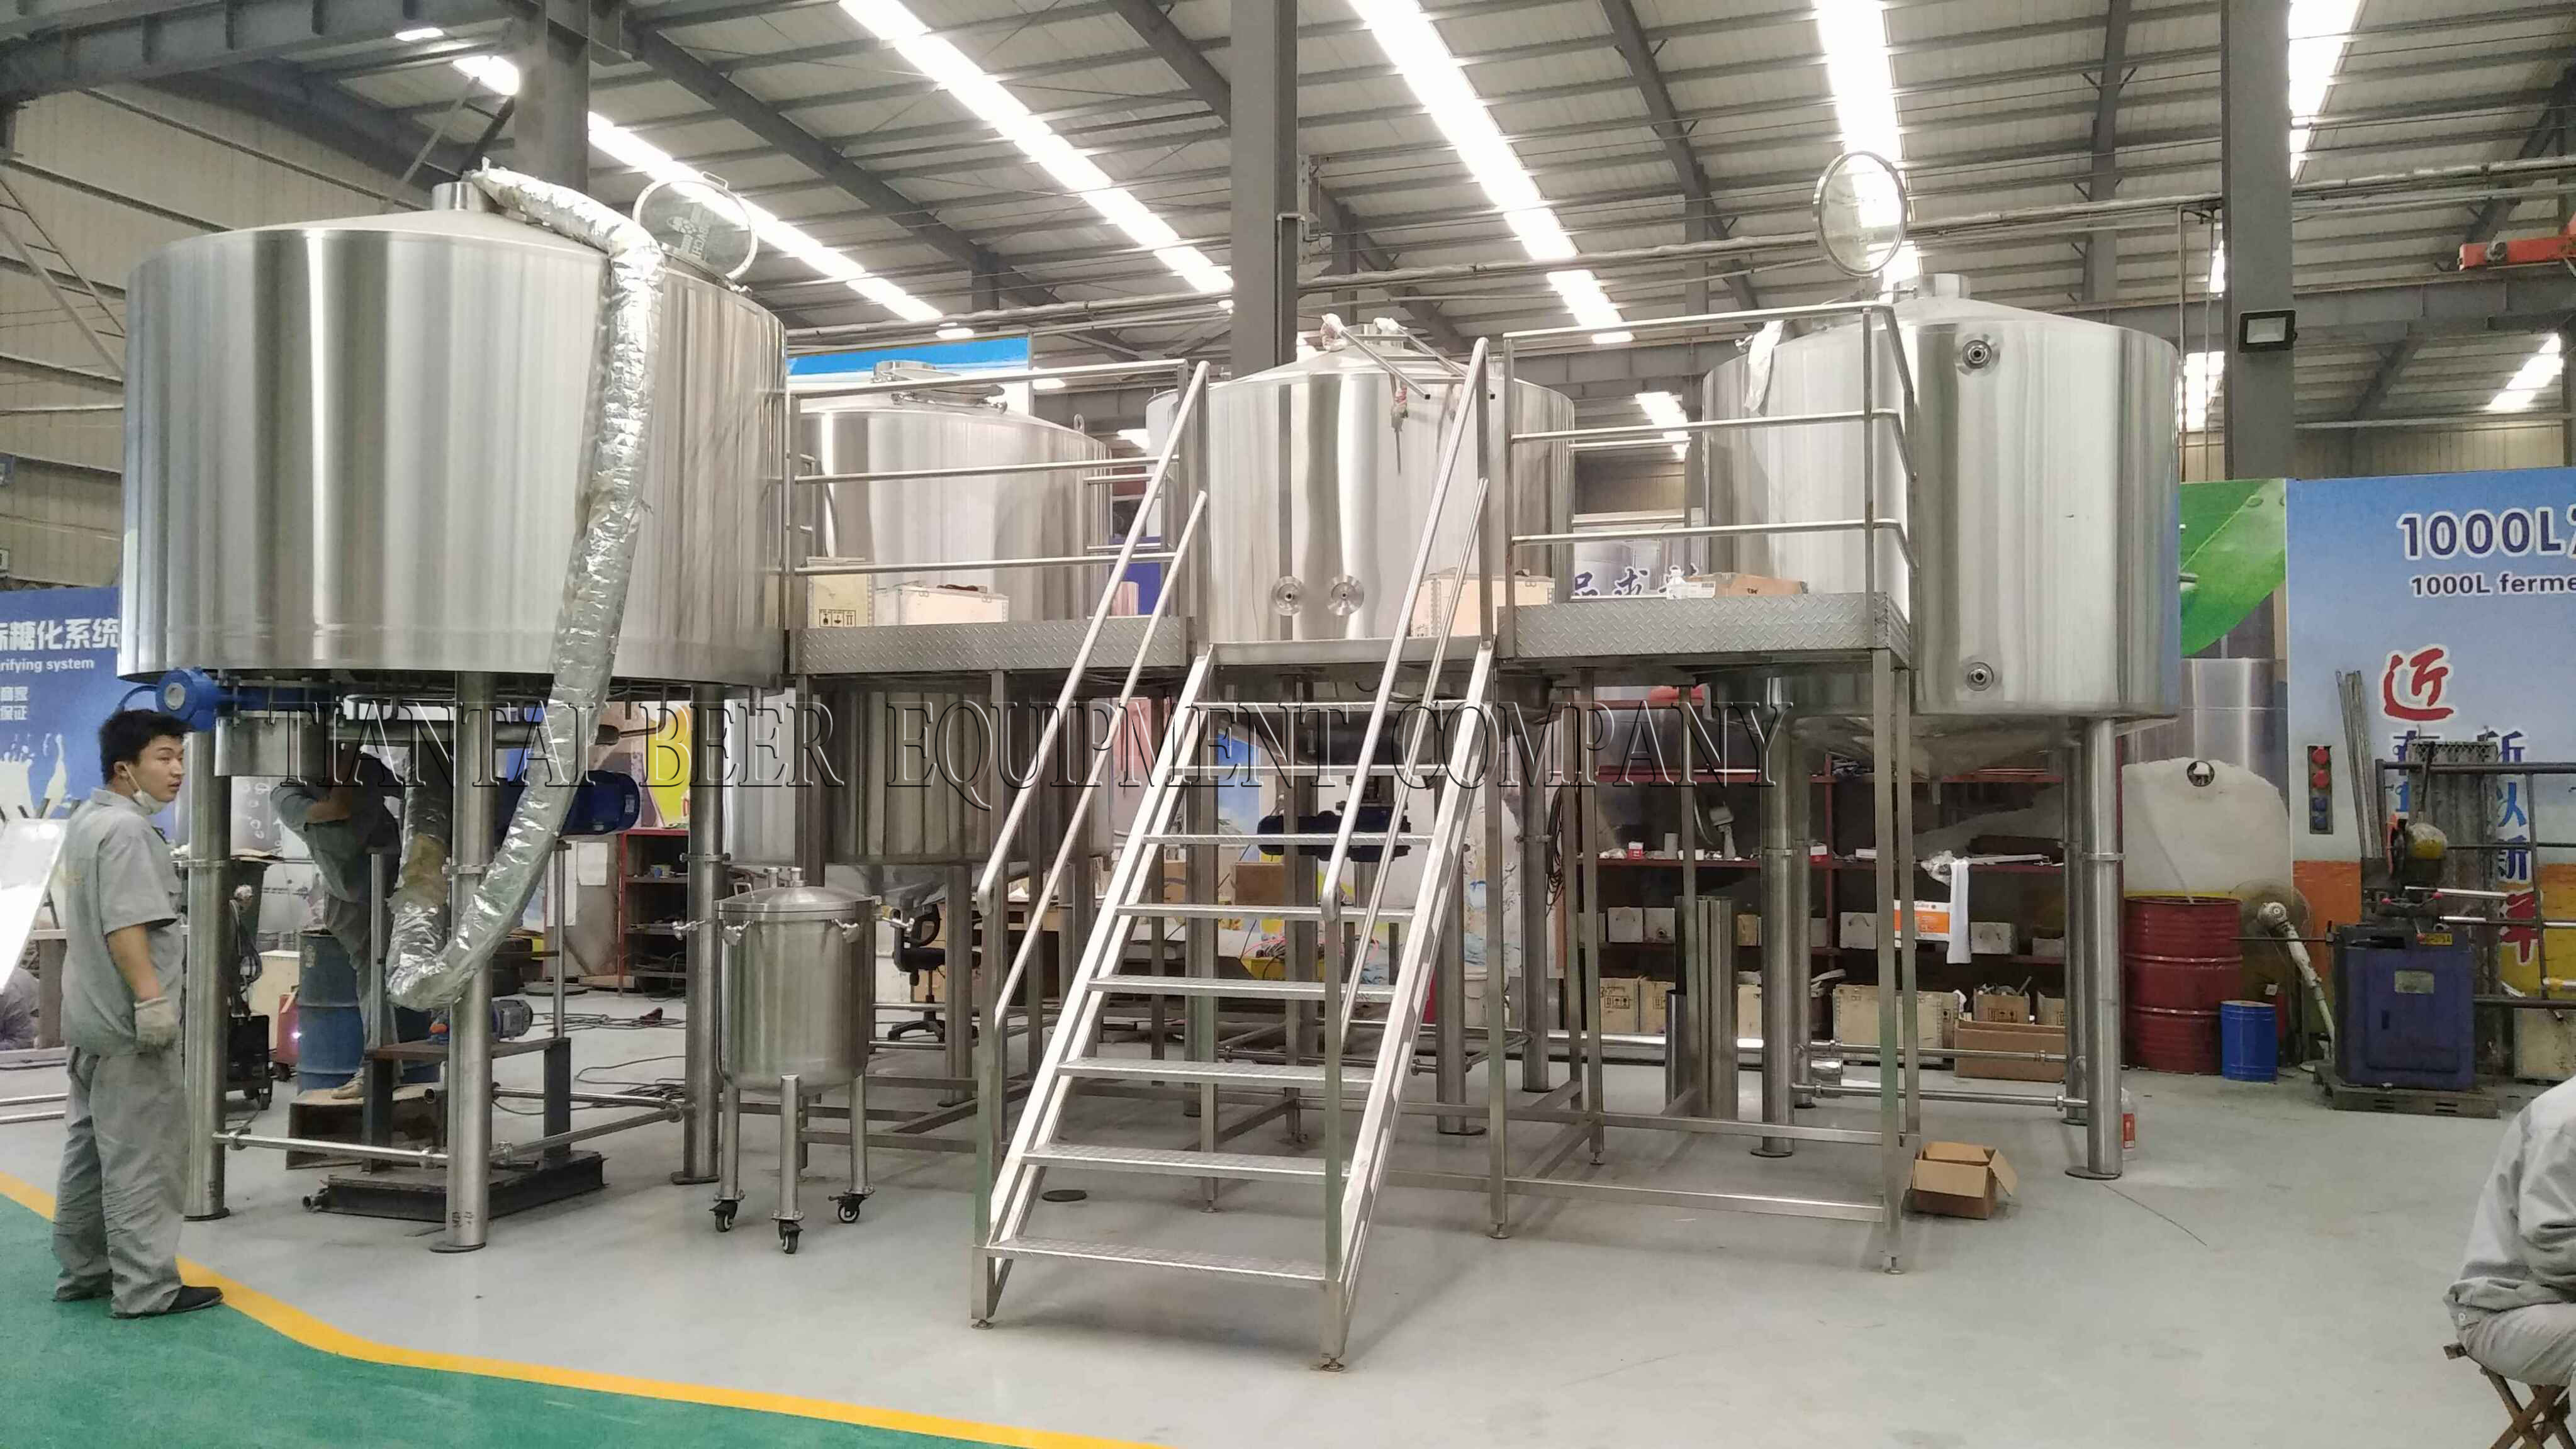 <b>Australia 1000L brewery system</b>